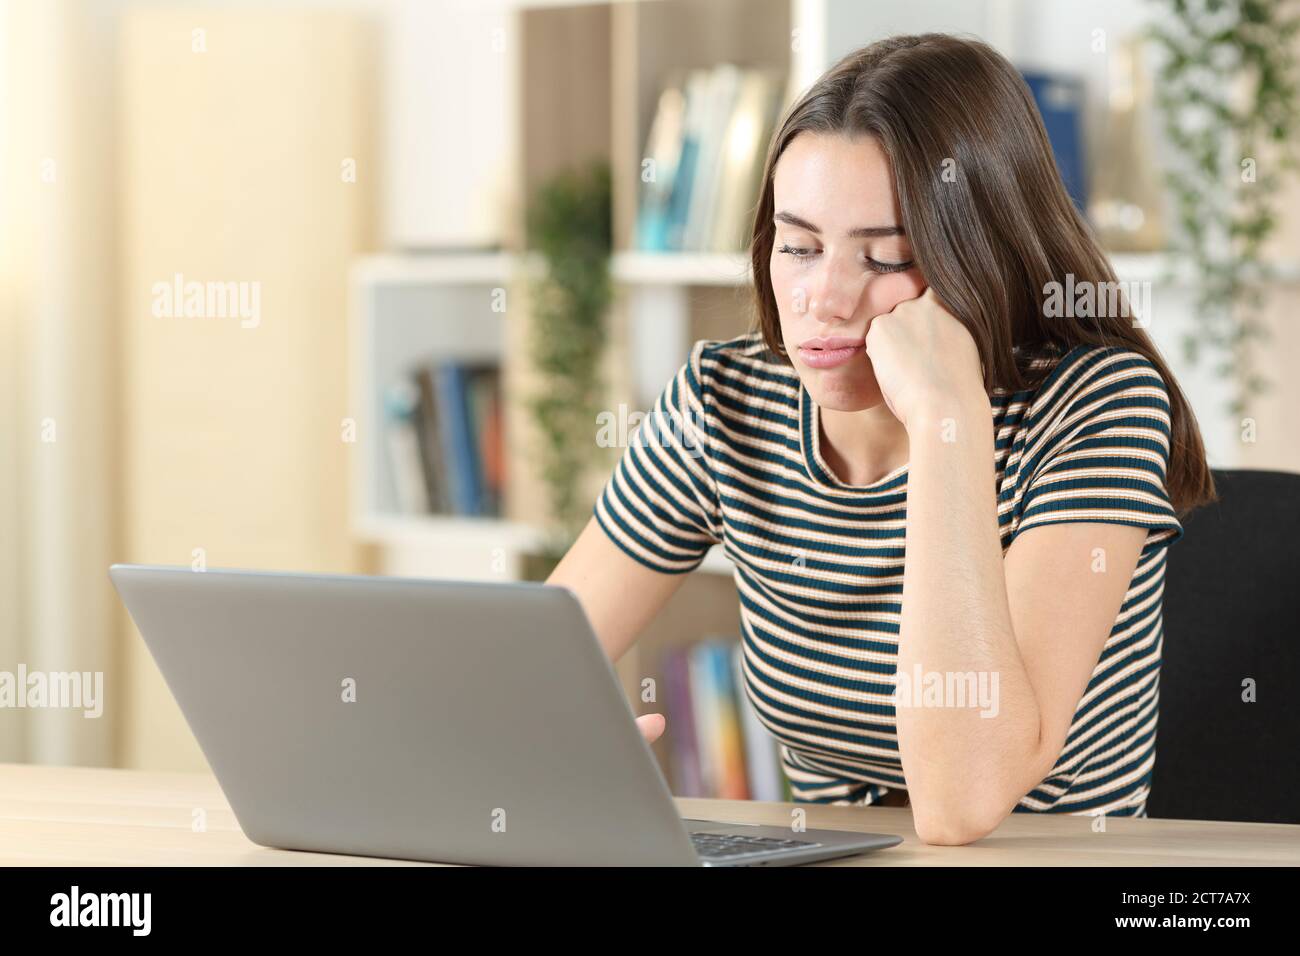 Adolescente aburrido usando un portátil perdiendo tiempo sentado en un escritorio en casa Foto de stock